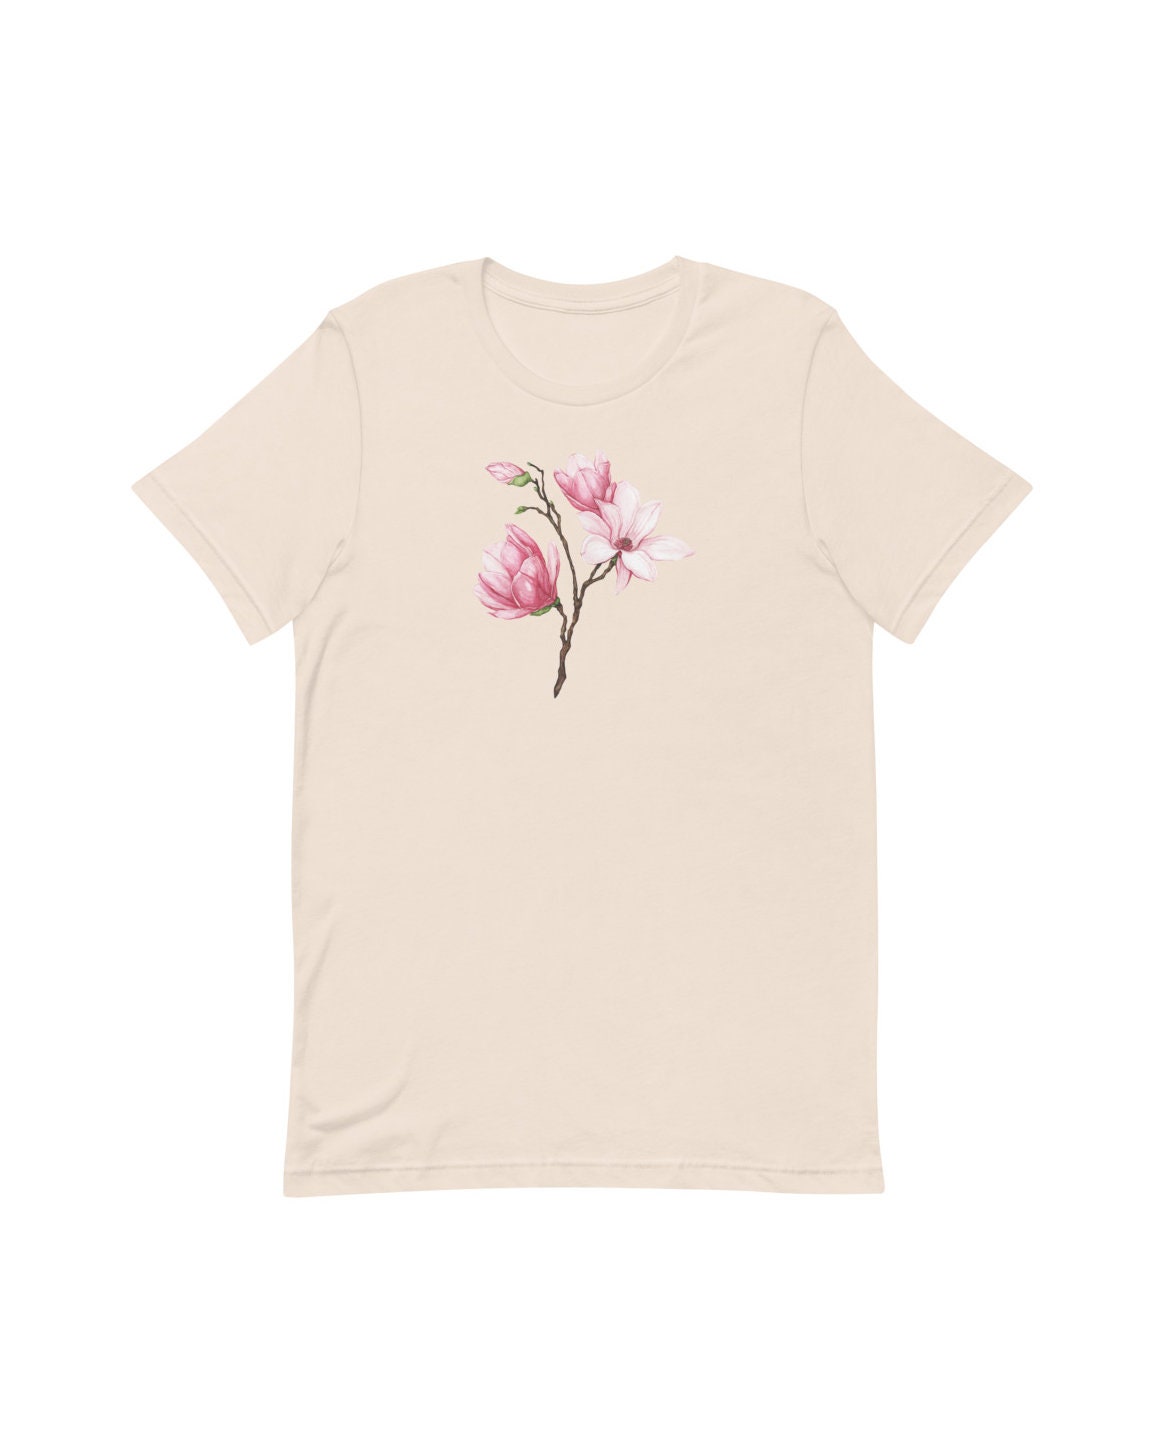 Magnolia Flower Shirts Pink Magnolia Flower Tshirt | Etsy